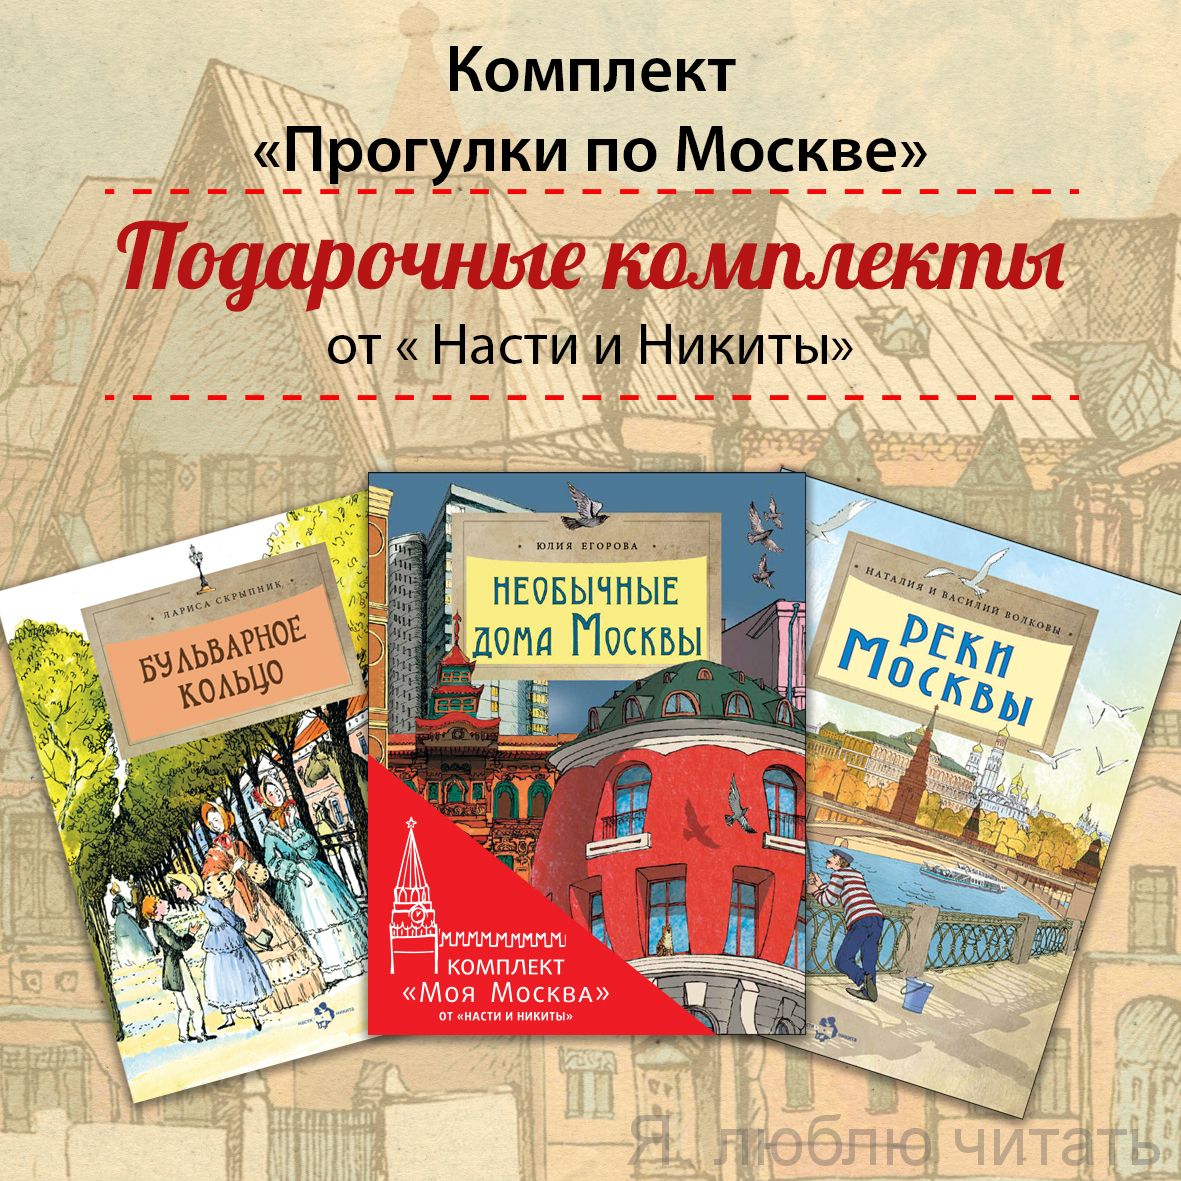 Книжный комплект "Прогулки по Москве" 2